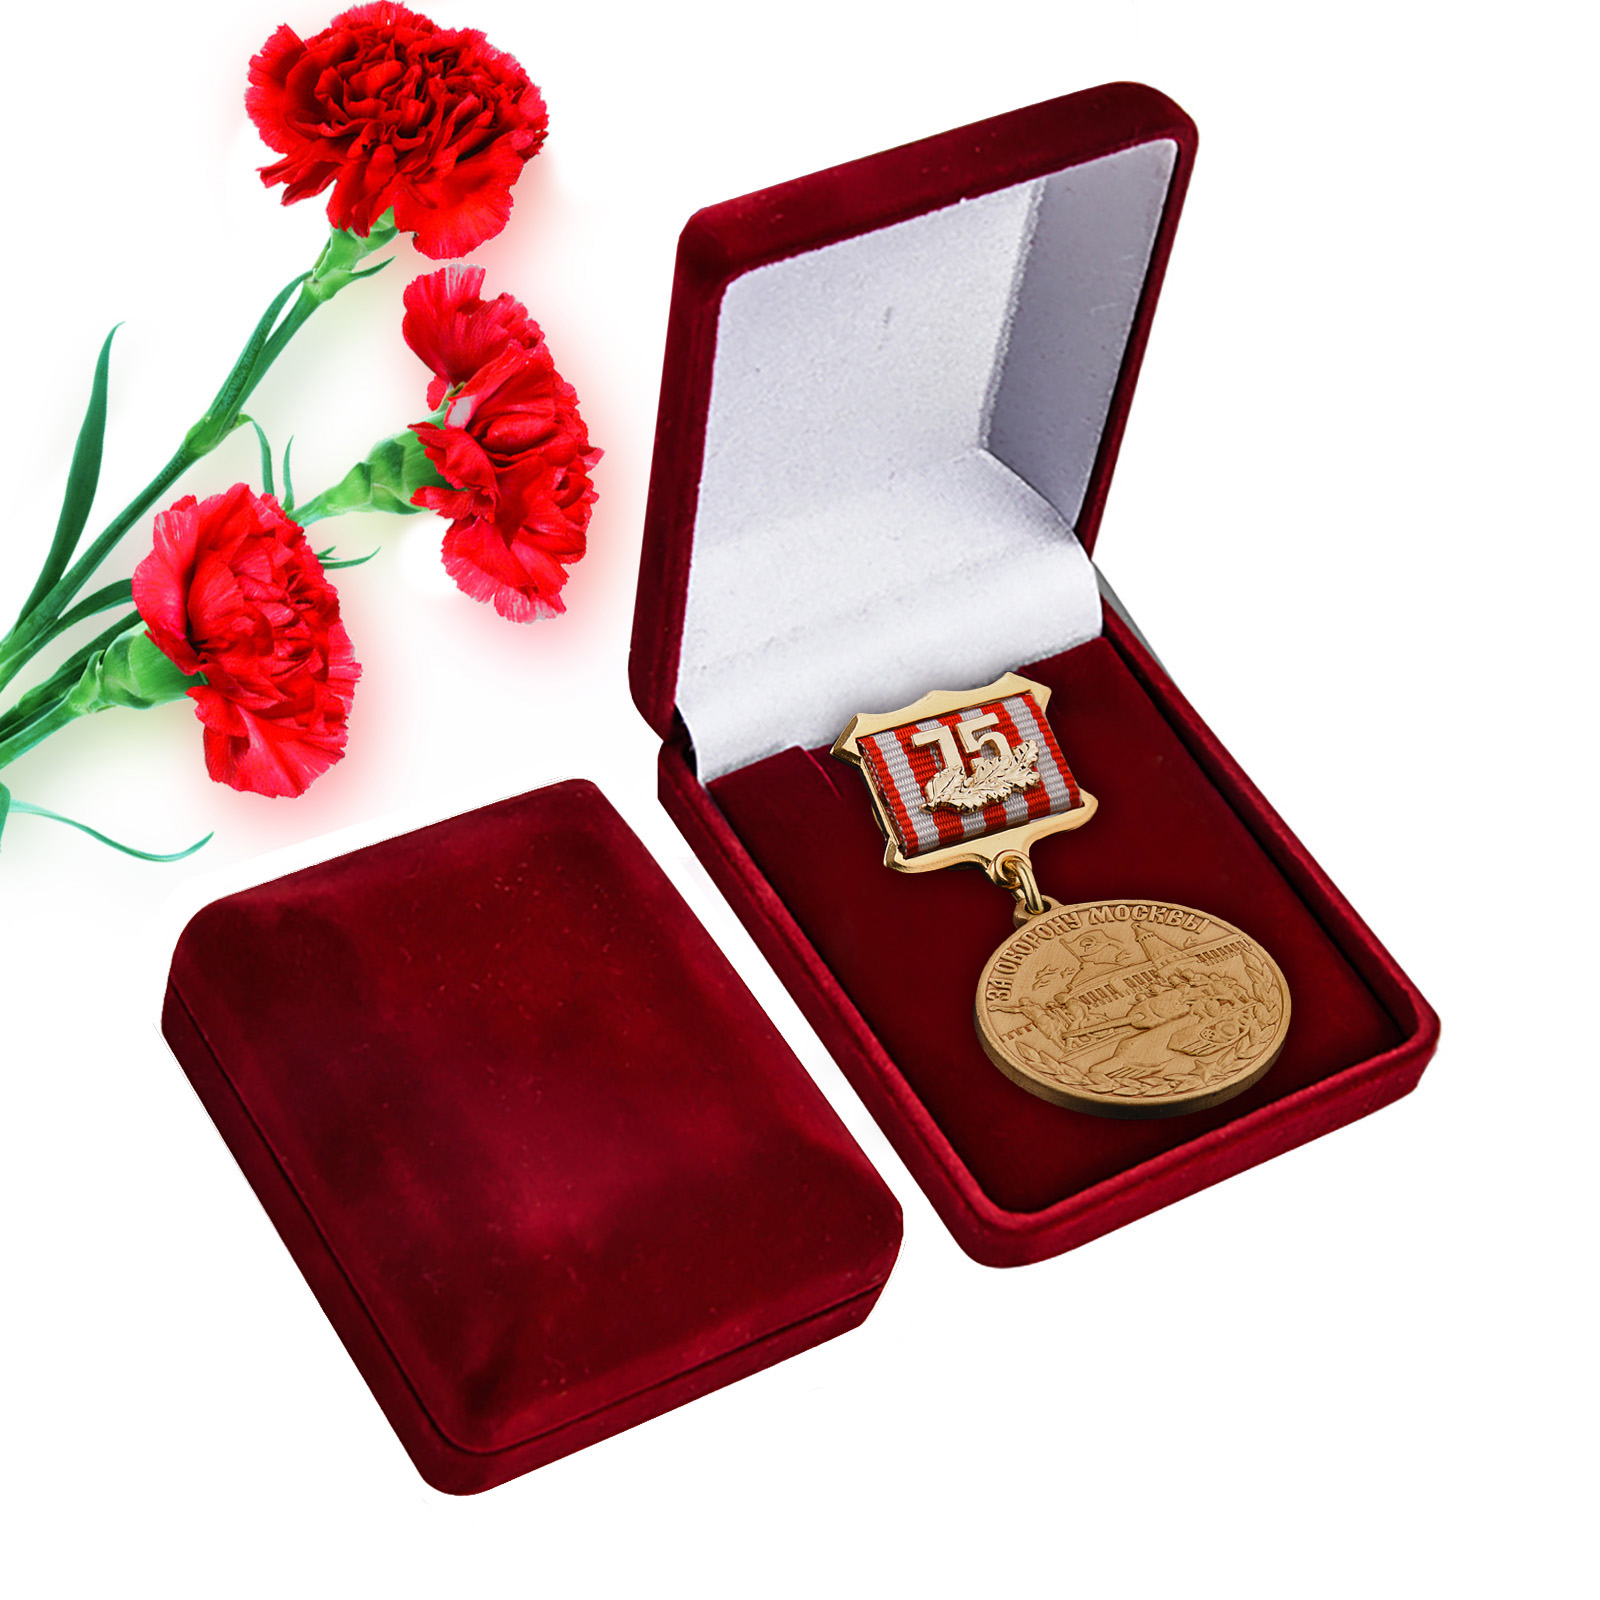 Купить латунную медаль 75 лет Битвы под Москвой в подарок выгодно